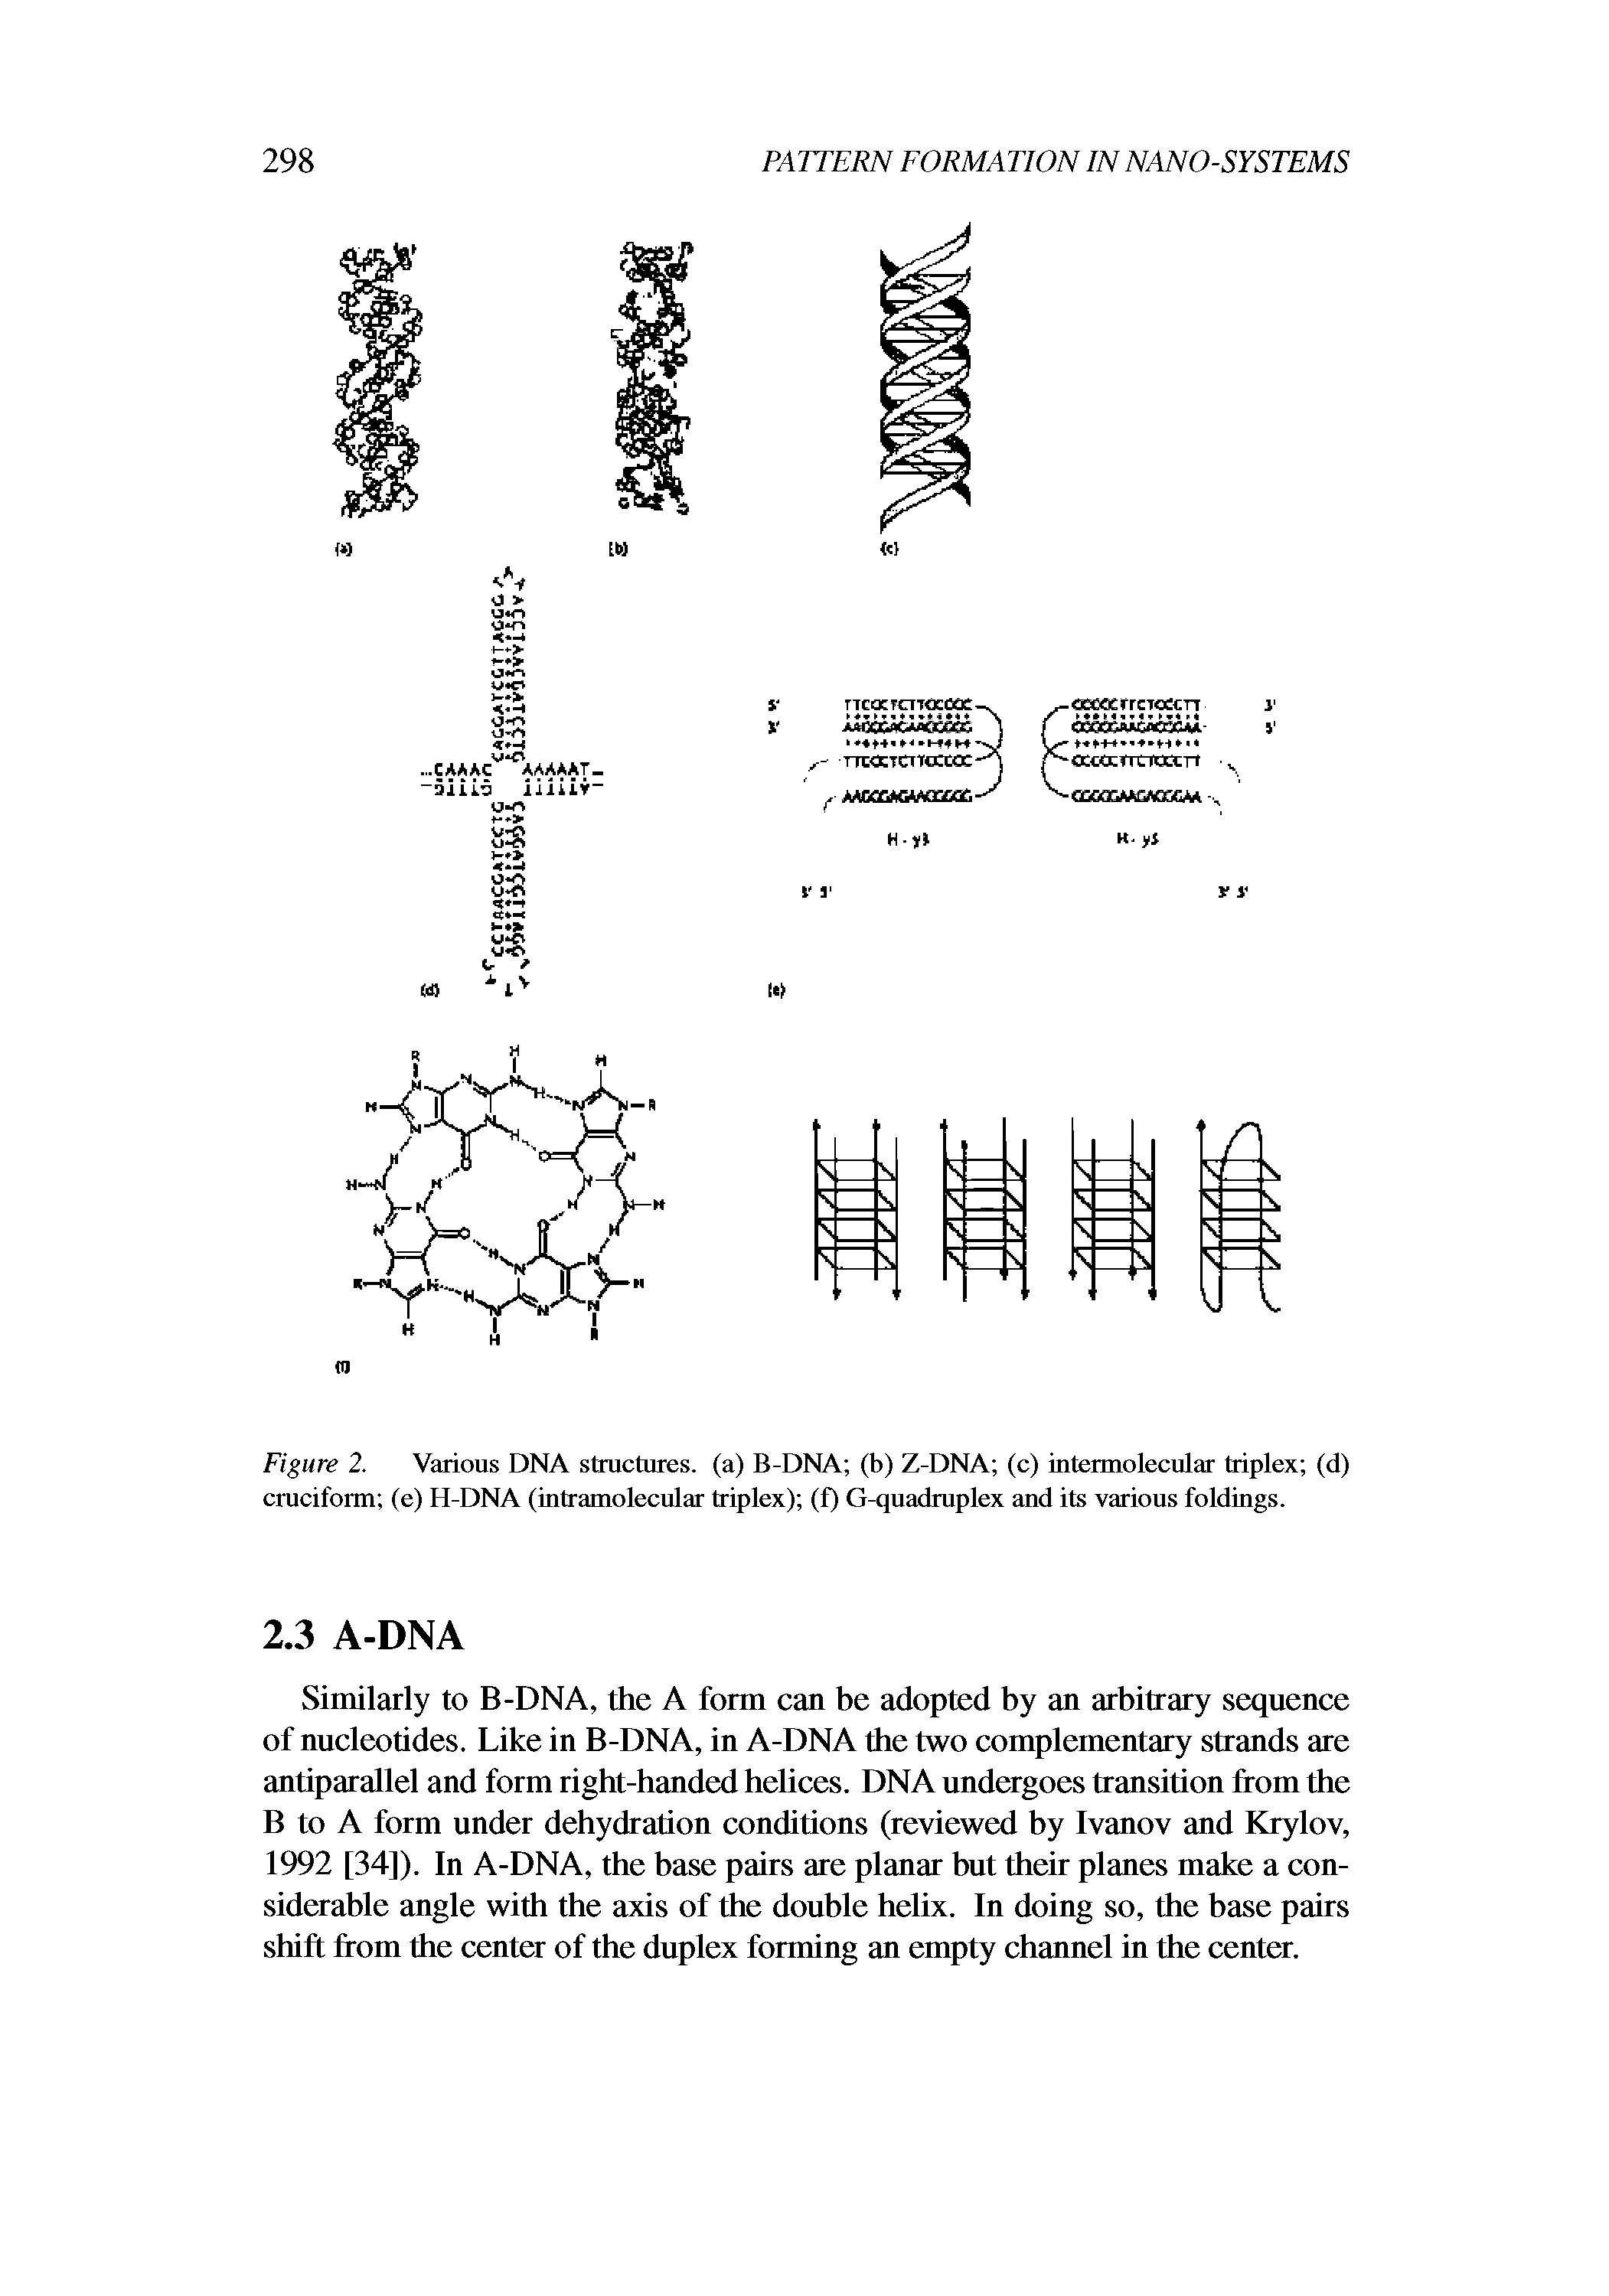 Figure 2. Various DNA structures, (a) B-DNA (b) Z-DNA (c) intennolecular triplex (d) cruciform (e) H-DNA (intramolecular triplex) (f) G-quadruplex and its various foldings.